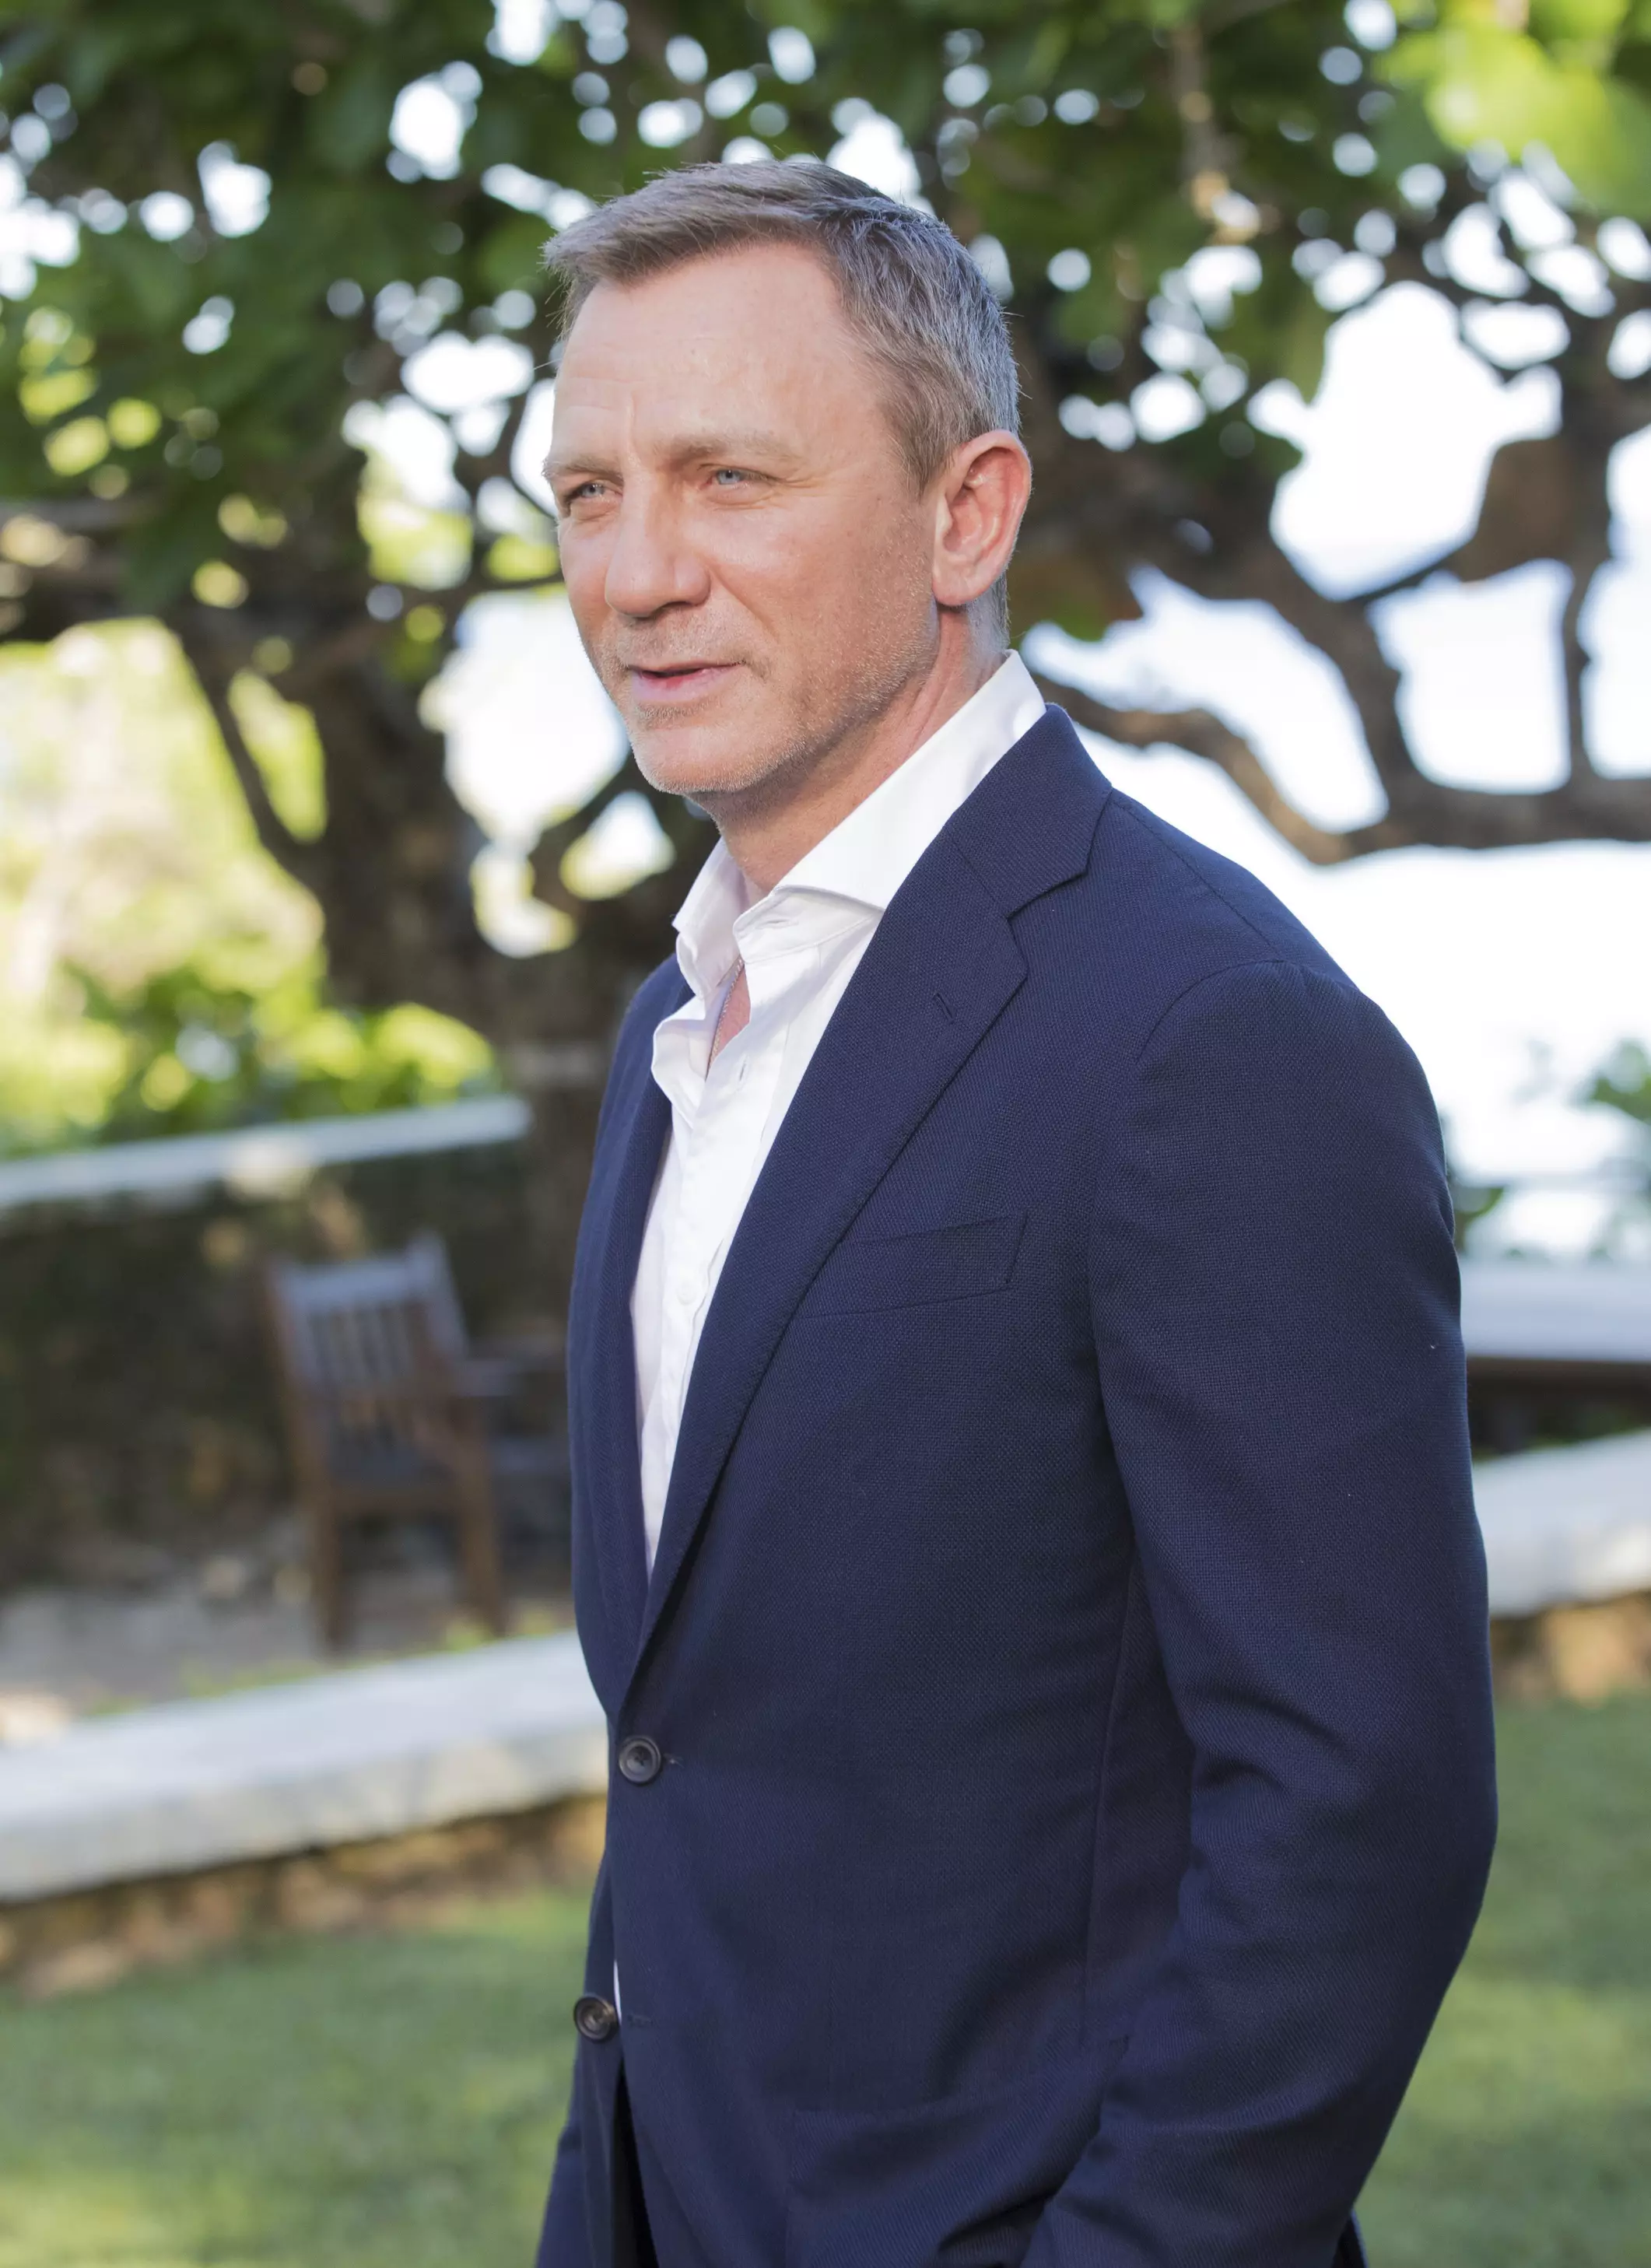 Daniel Craig at the Bond 25 launch in Jamaica.